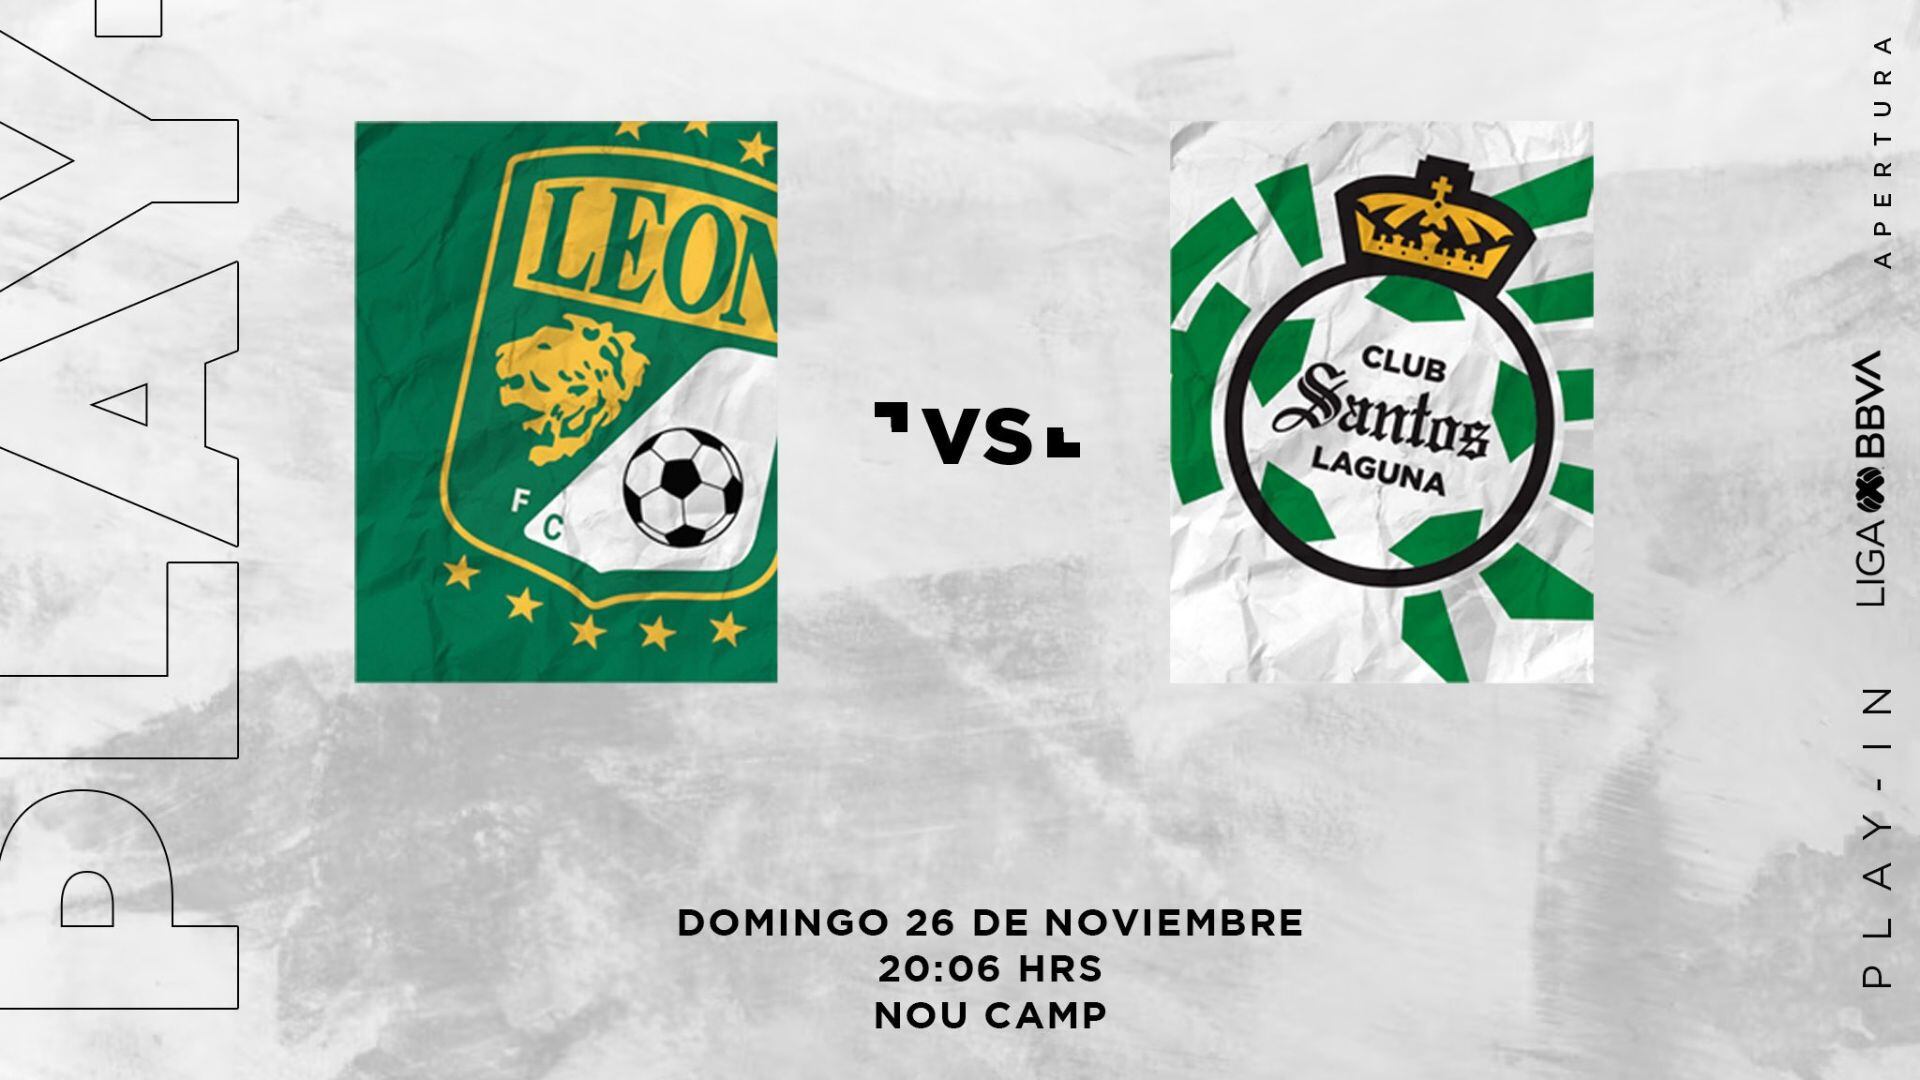 León vs Santos play in - 26 noviembre